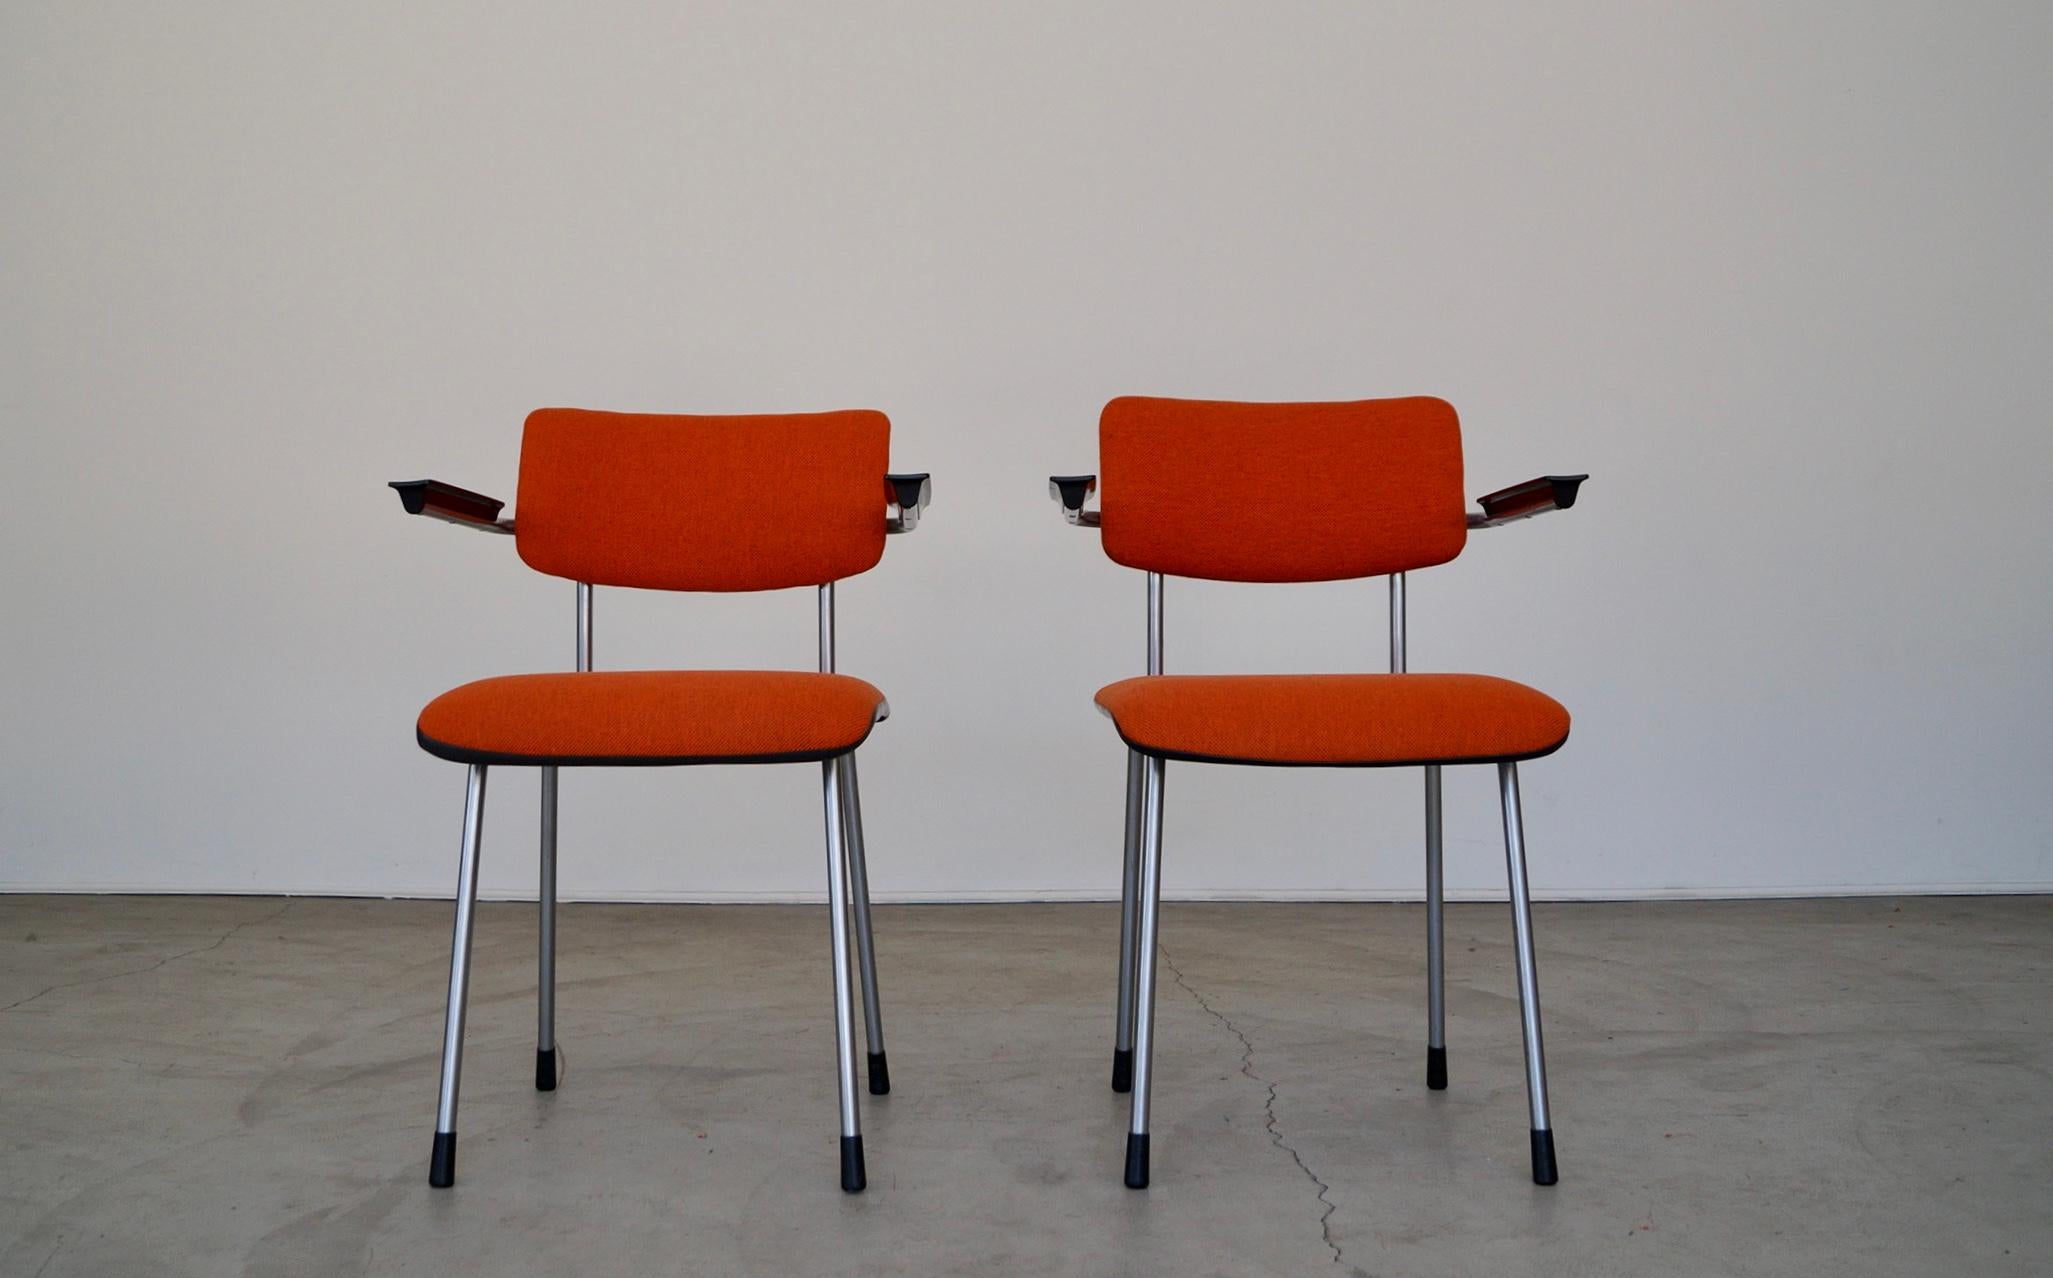 Nous avons une paire de fauteuils Gispen originaux des années 1950 de style moderne du milieu du siècle à vendre. Ils ont été conçus par William H. Gispen à la fin des années 1950 et ont été fabriqués aux Pays-Bas. Ils sont d'origine et ont été